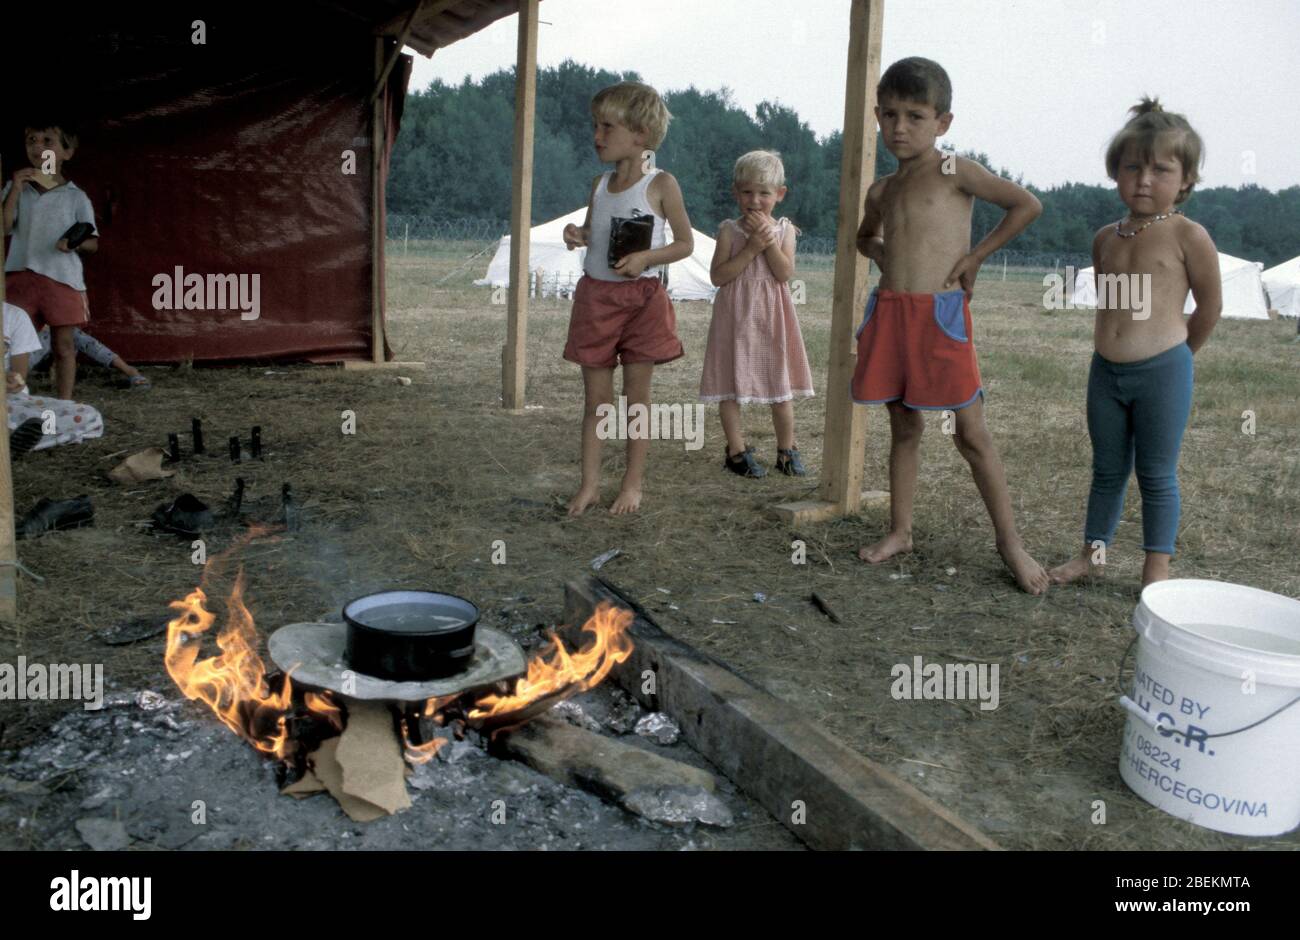 1995 - Kinder, die vor dem Massaker von Srebrenica während des Bosnienkrieges fliehen, werden in Zelten auf dem Flugplatz Tuzla der Vereinten Nationen untergebracht Stockfoto